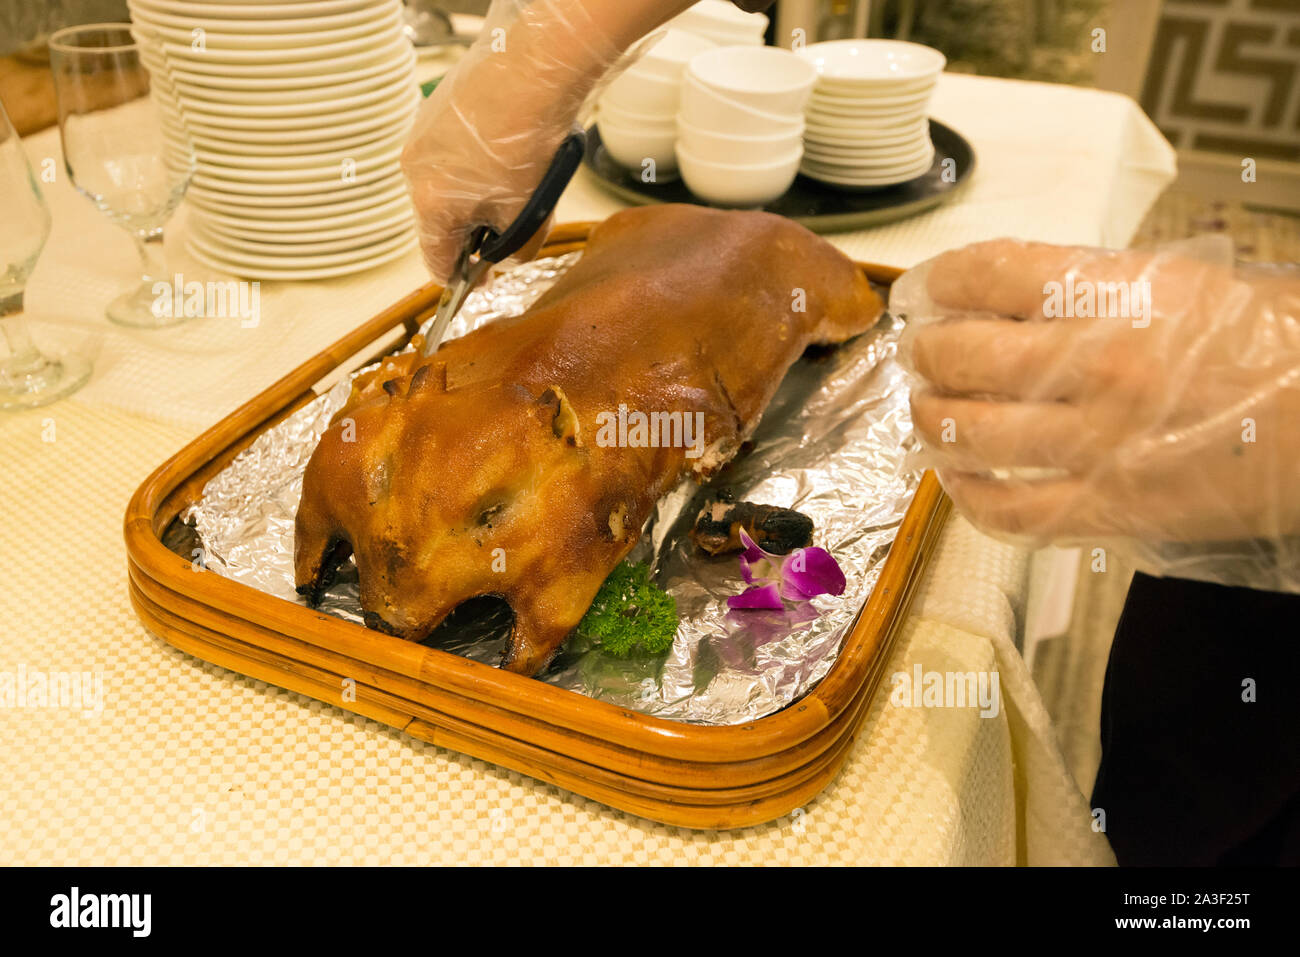 Chinese restaurant, roasted baby pig, Hong Kong, China. Stock Photo